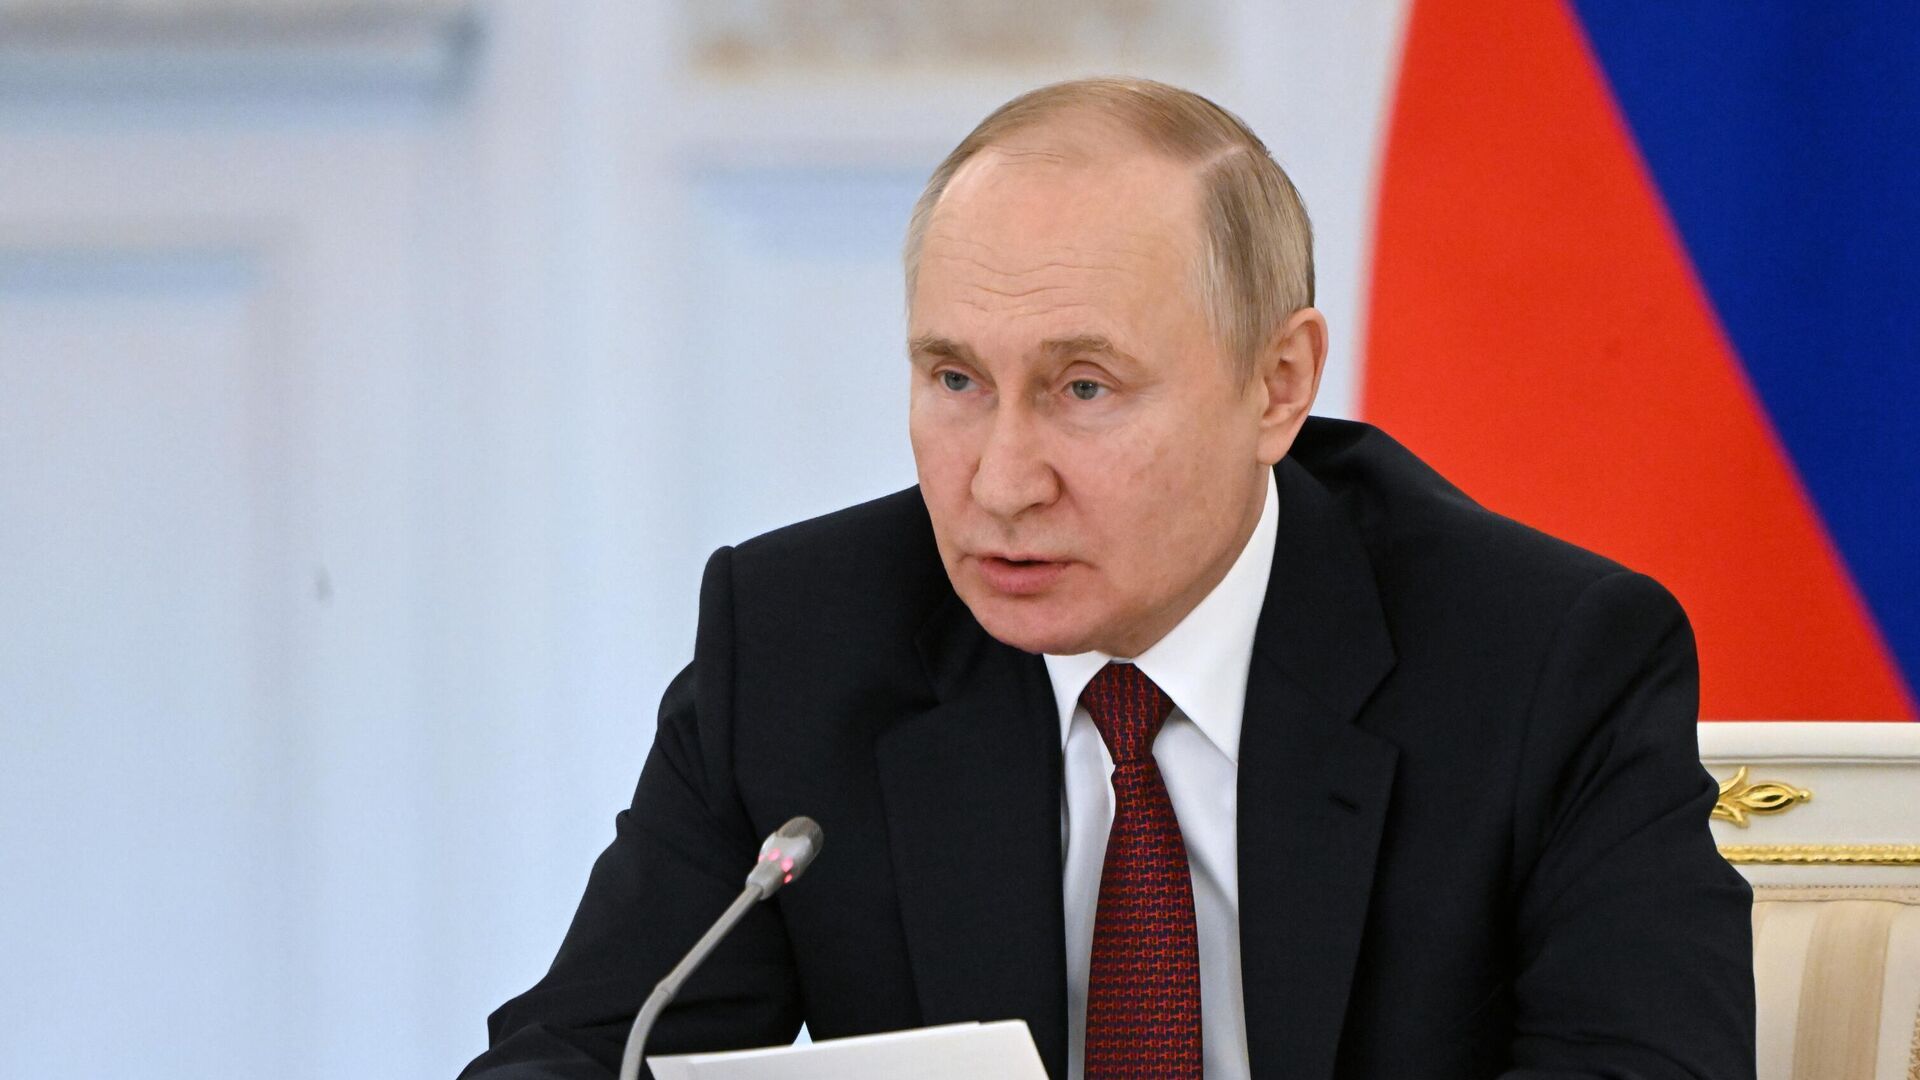 Володимир Путін назвав свою версію війни - цинічна заява диктатора